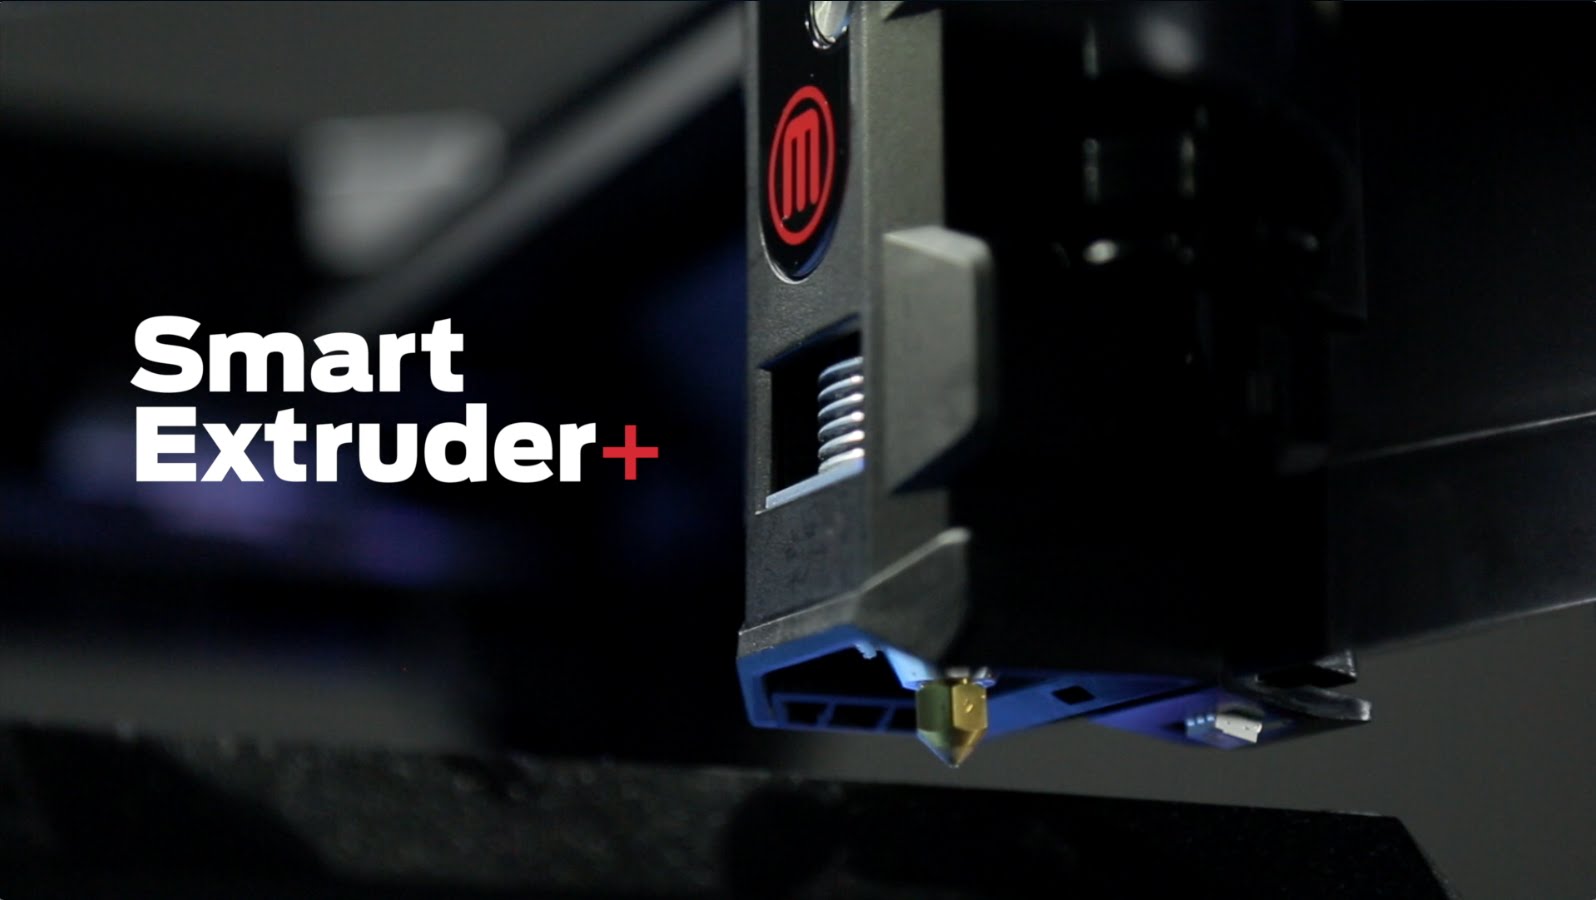 Maggiori informazioni su "CES 2016 - Makerbot e il nuovo Smart Extruder+"